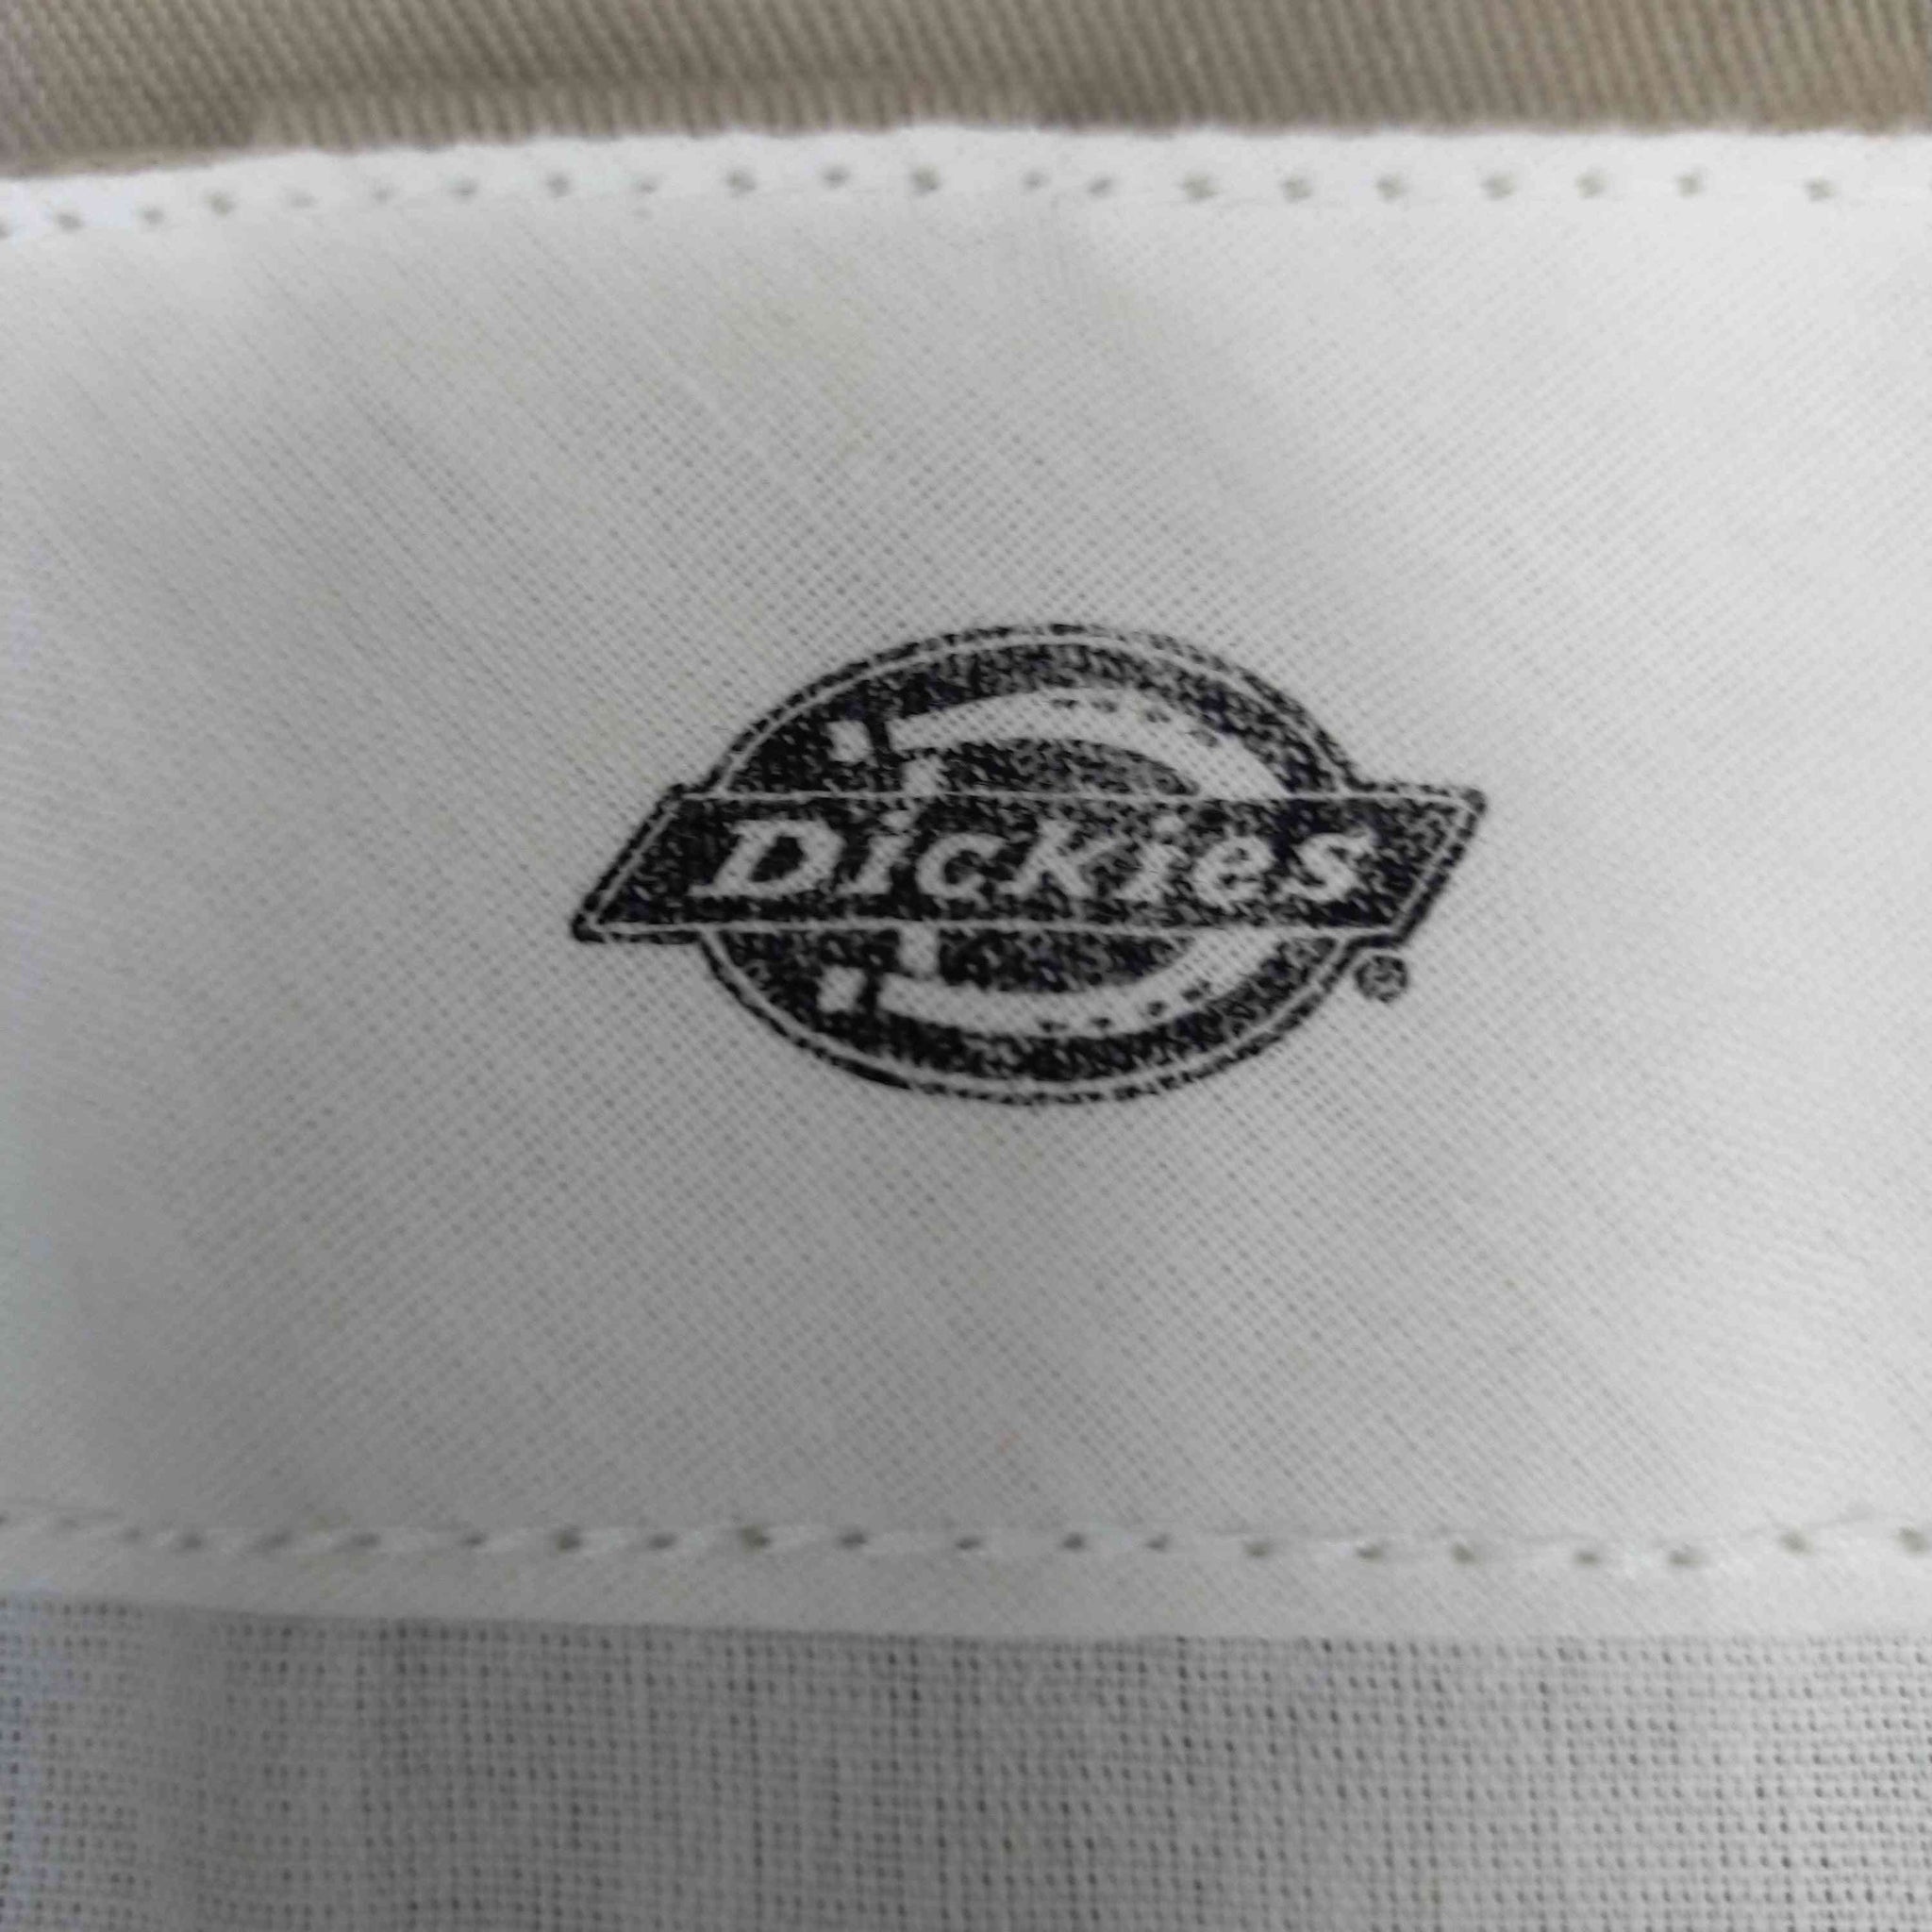 Dickies(ディッキーズ)874ORIGINAL FIT ストレートワークパンツ